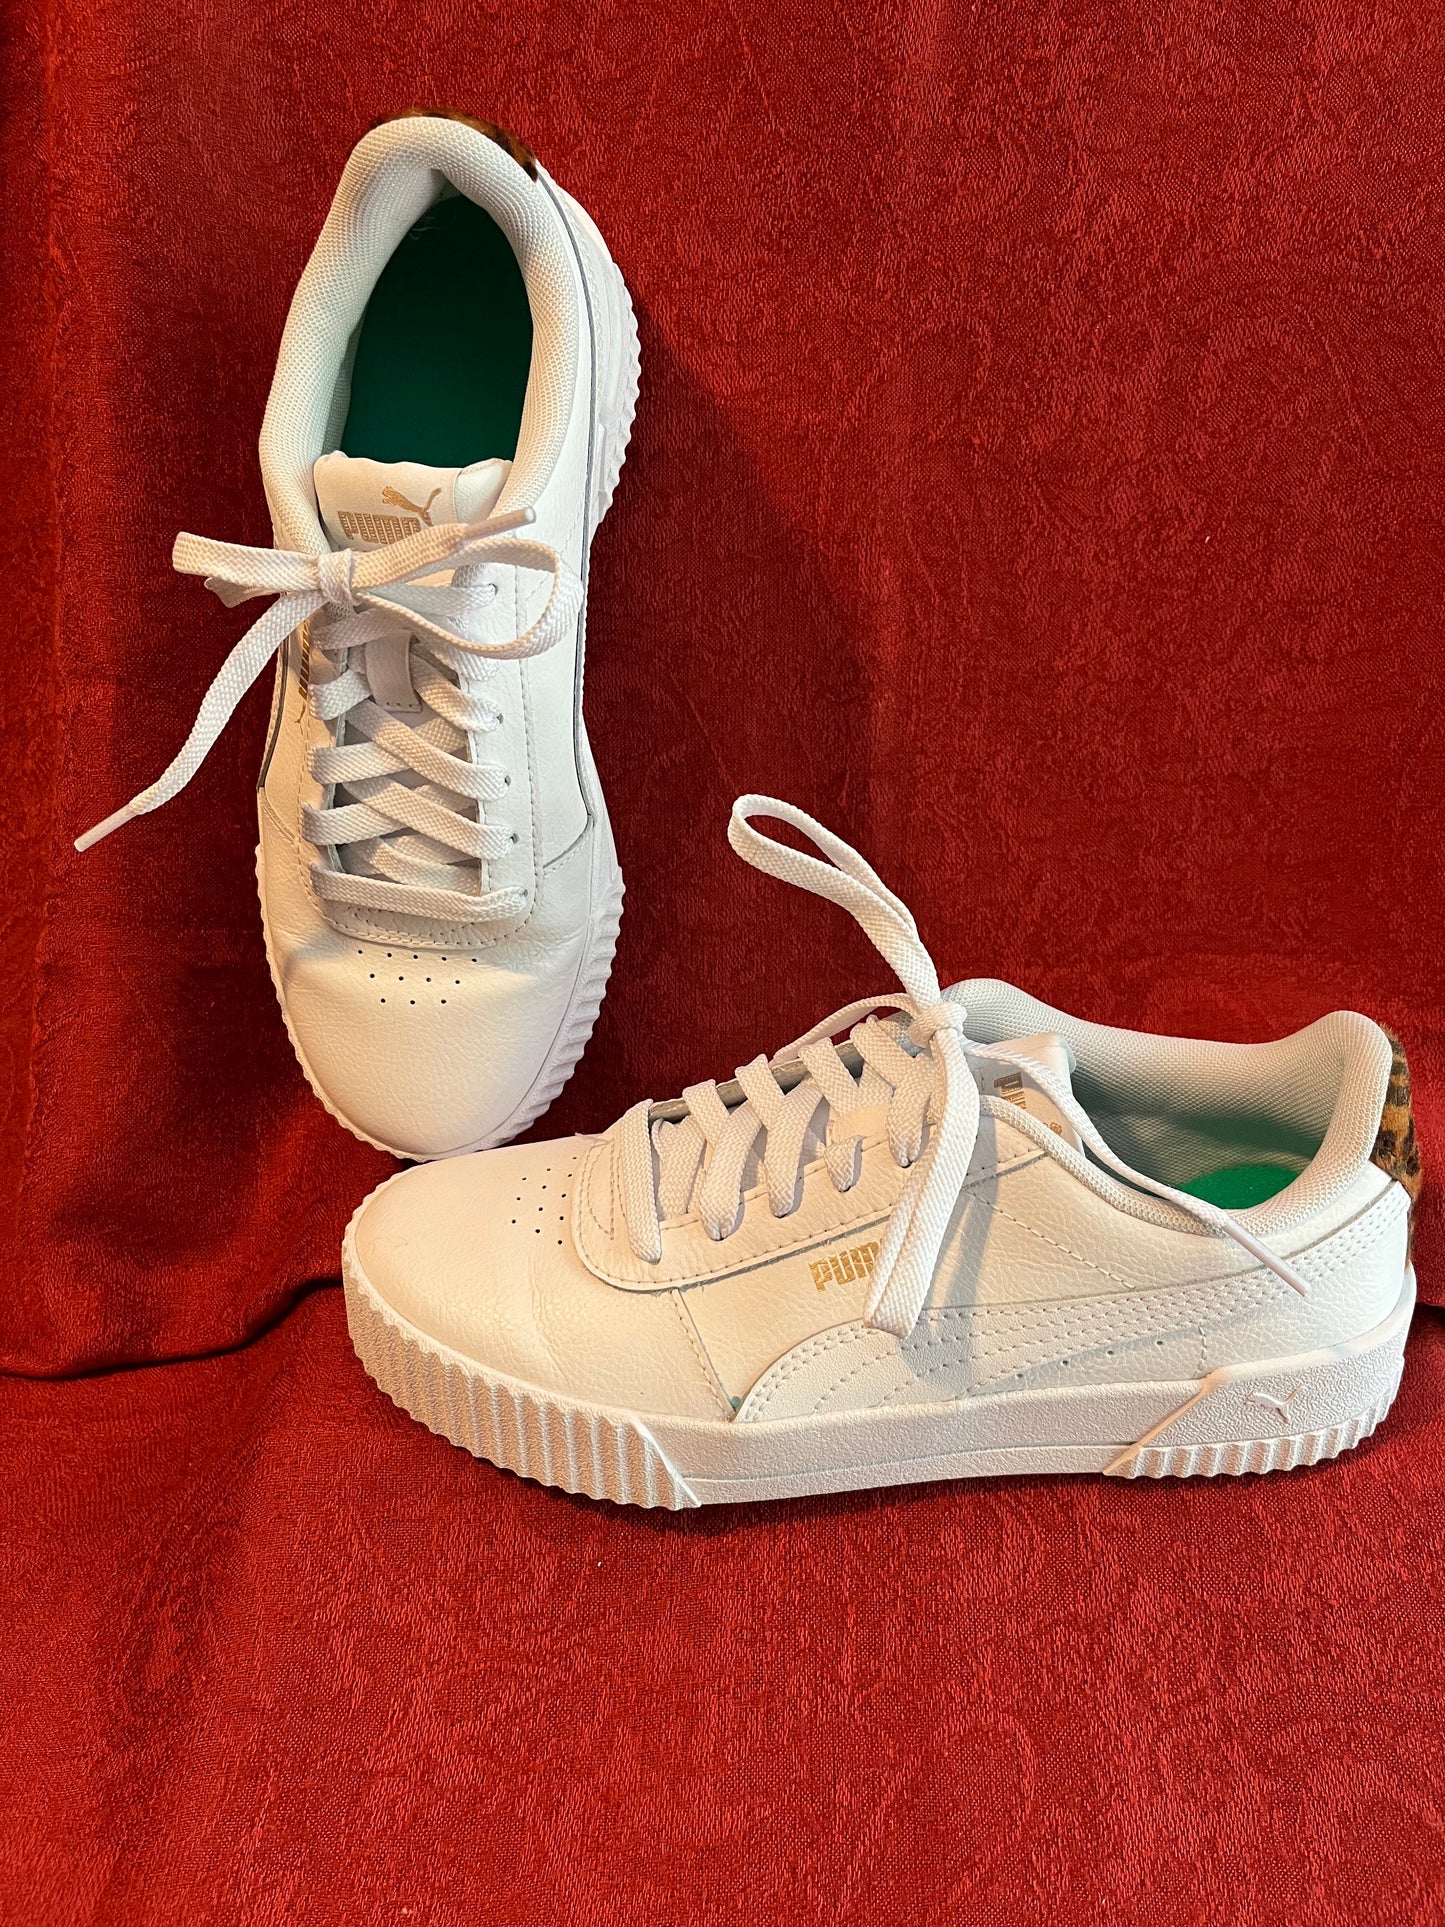 Puma Tennis Shoes-Size 5